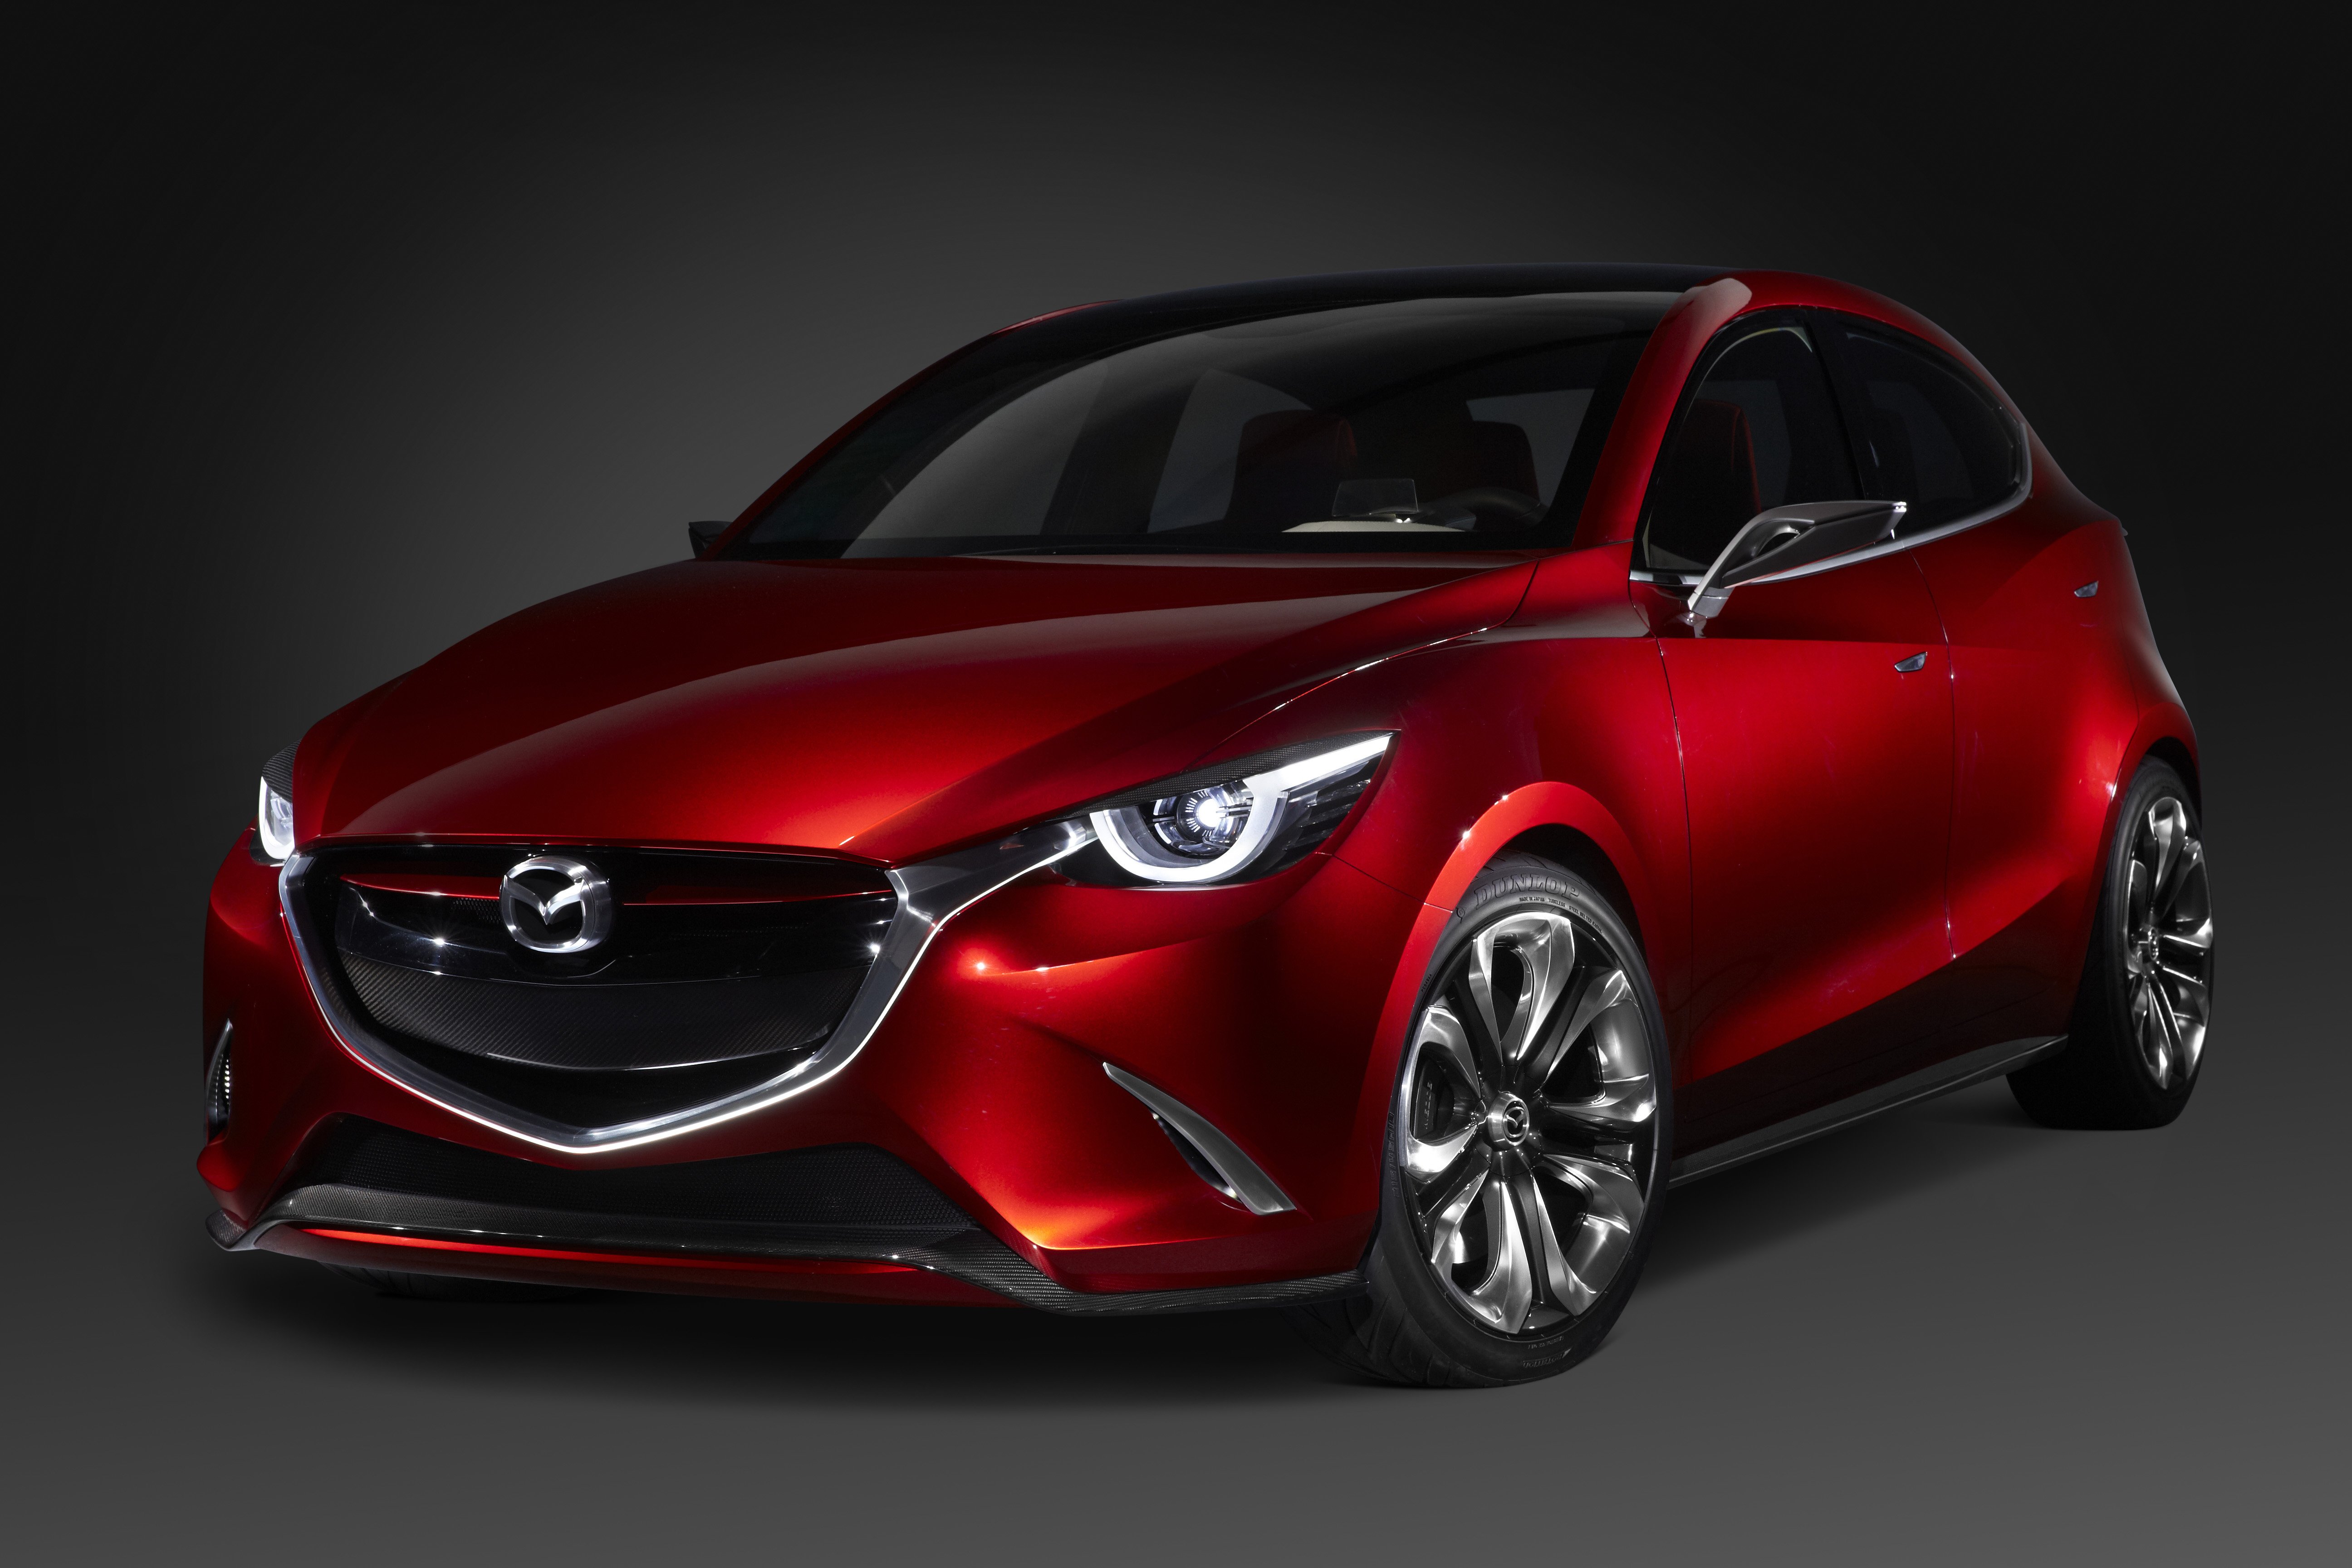 Red mazda. Мазда 3 бордовая 2015. Mazda автомобили Mazda 2015. Мазда 3 хэтчбек красный металлик. Мазда 4 красная.